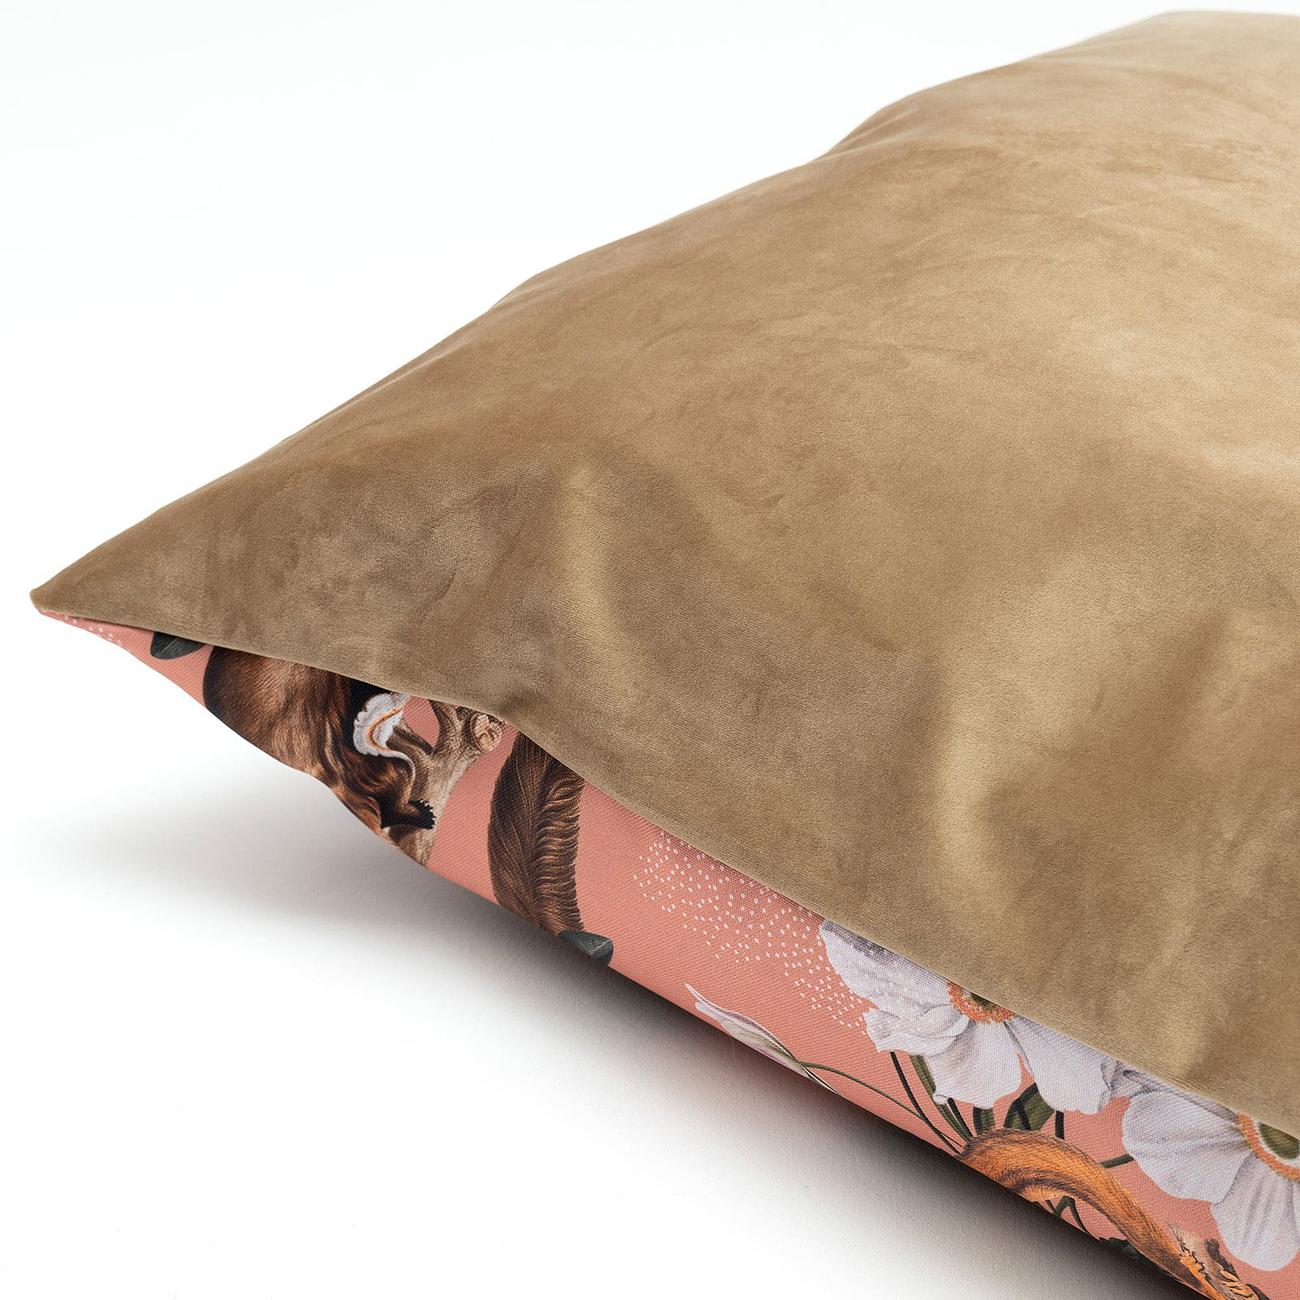 Spare velvet pillowcase for the sofa cushion - any design